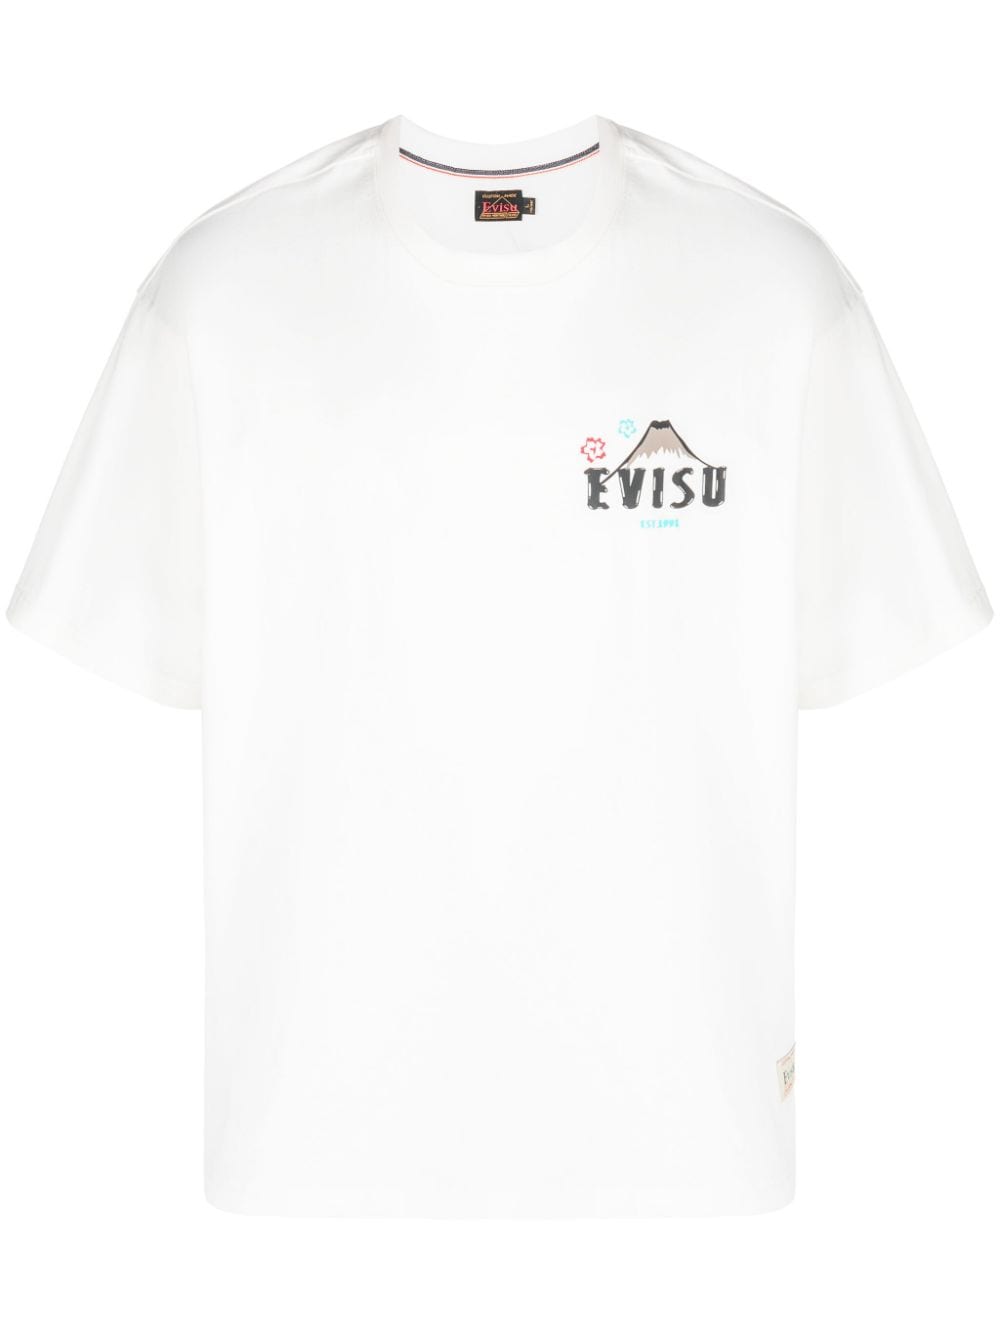 evisu t-shirt en coton à logo imprimé - blanc